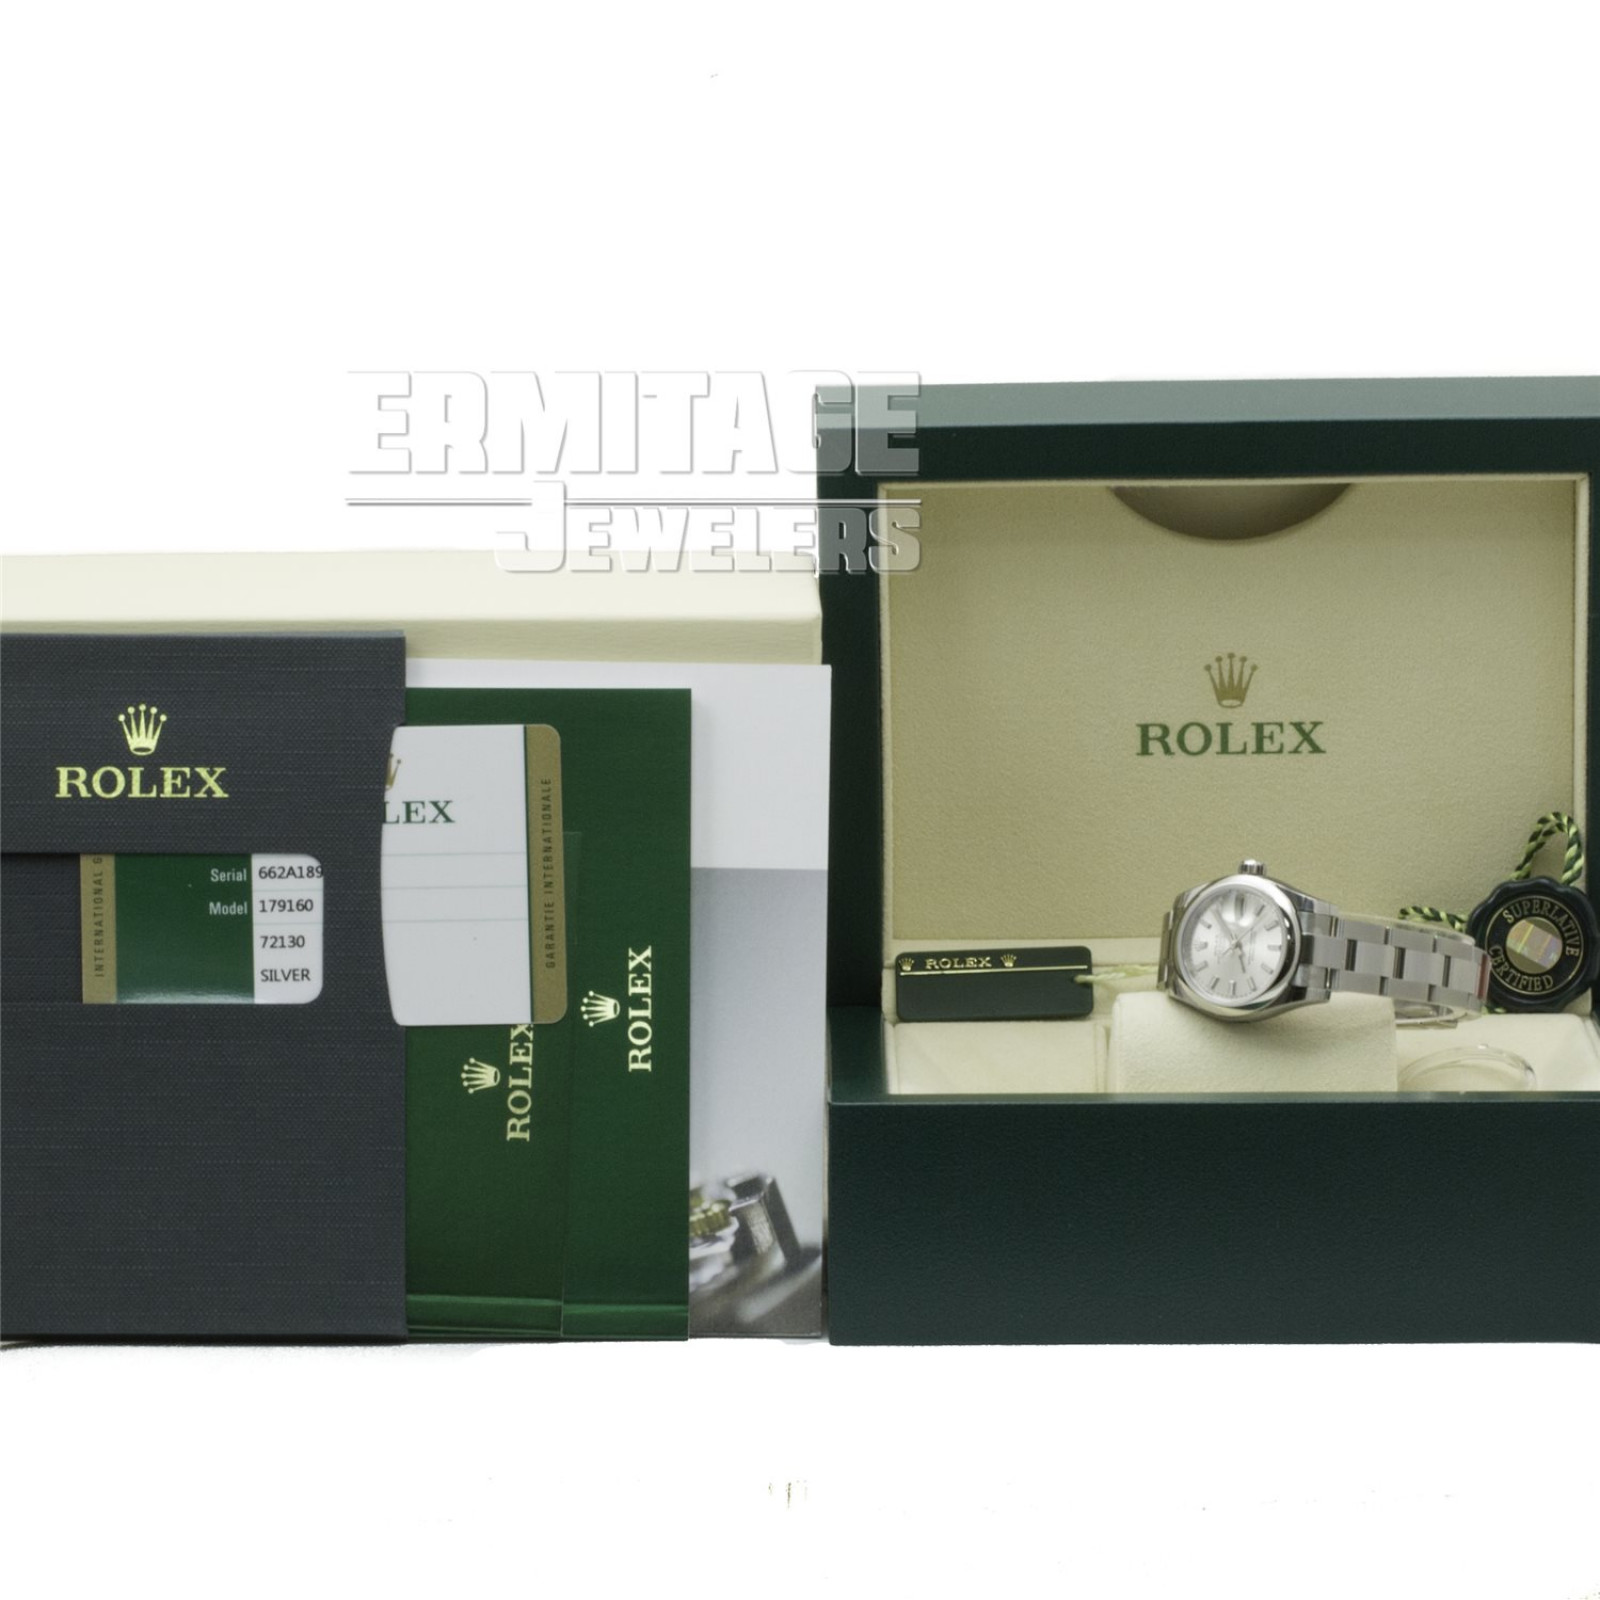 Year 2016 Rolex Datejust 179160